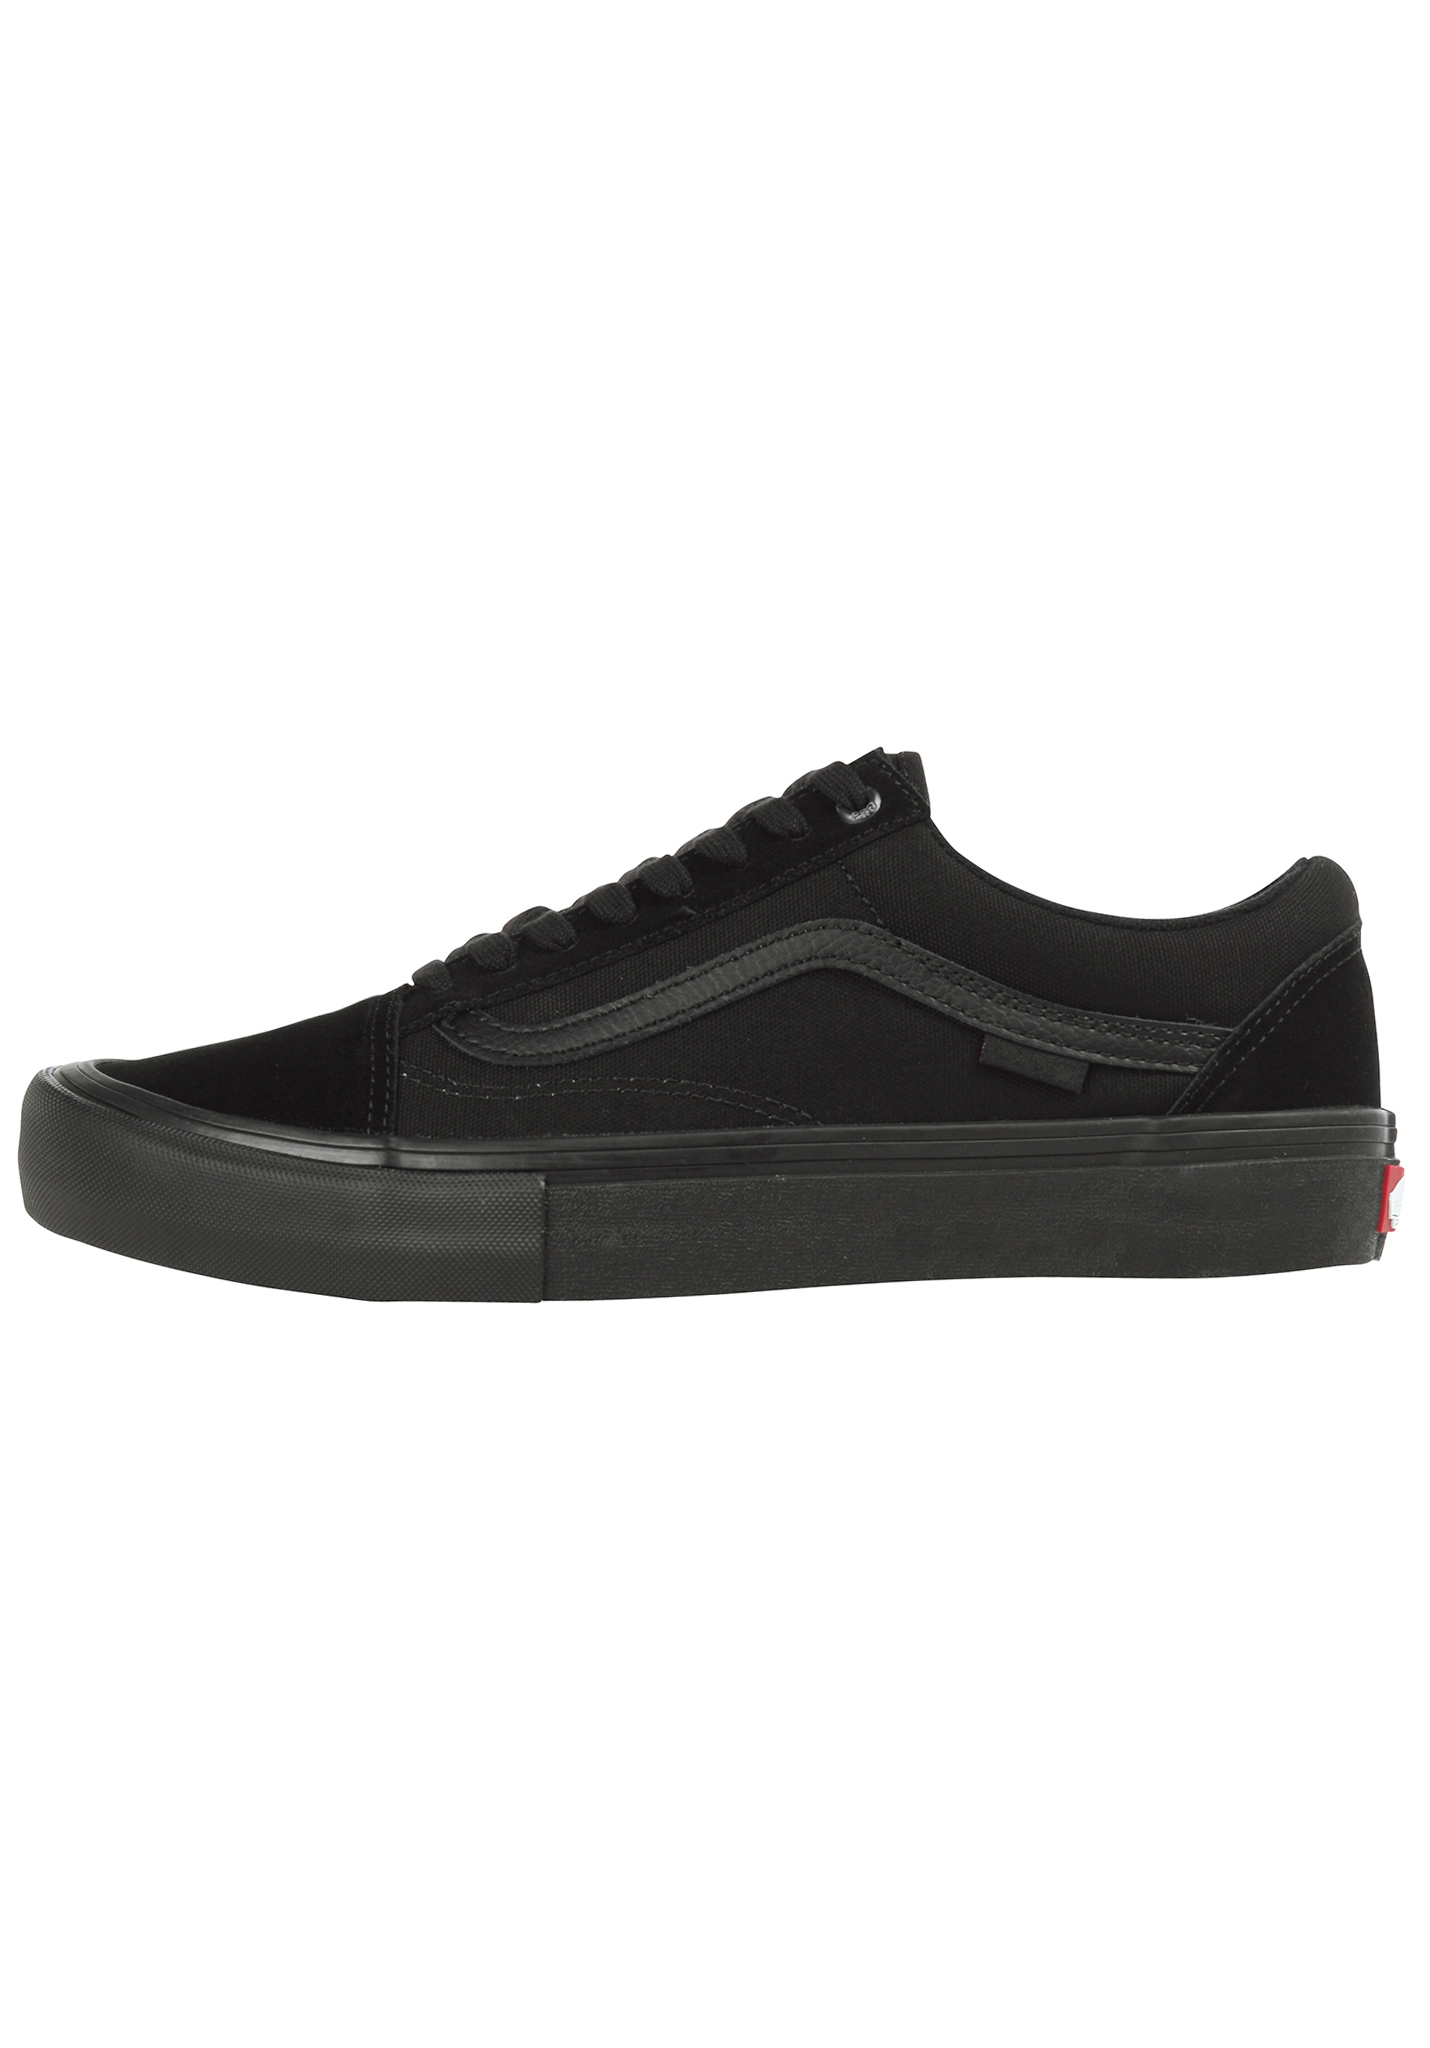 Vans Old Skool Pro Sneaker black 36